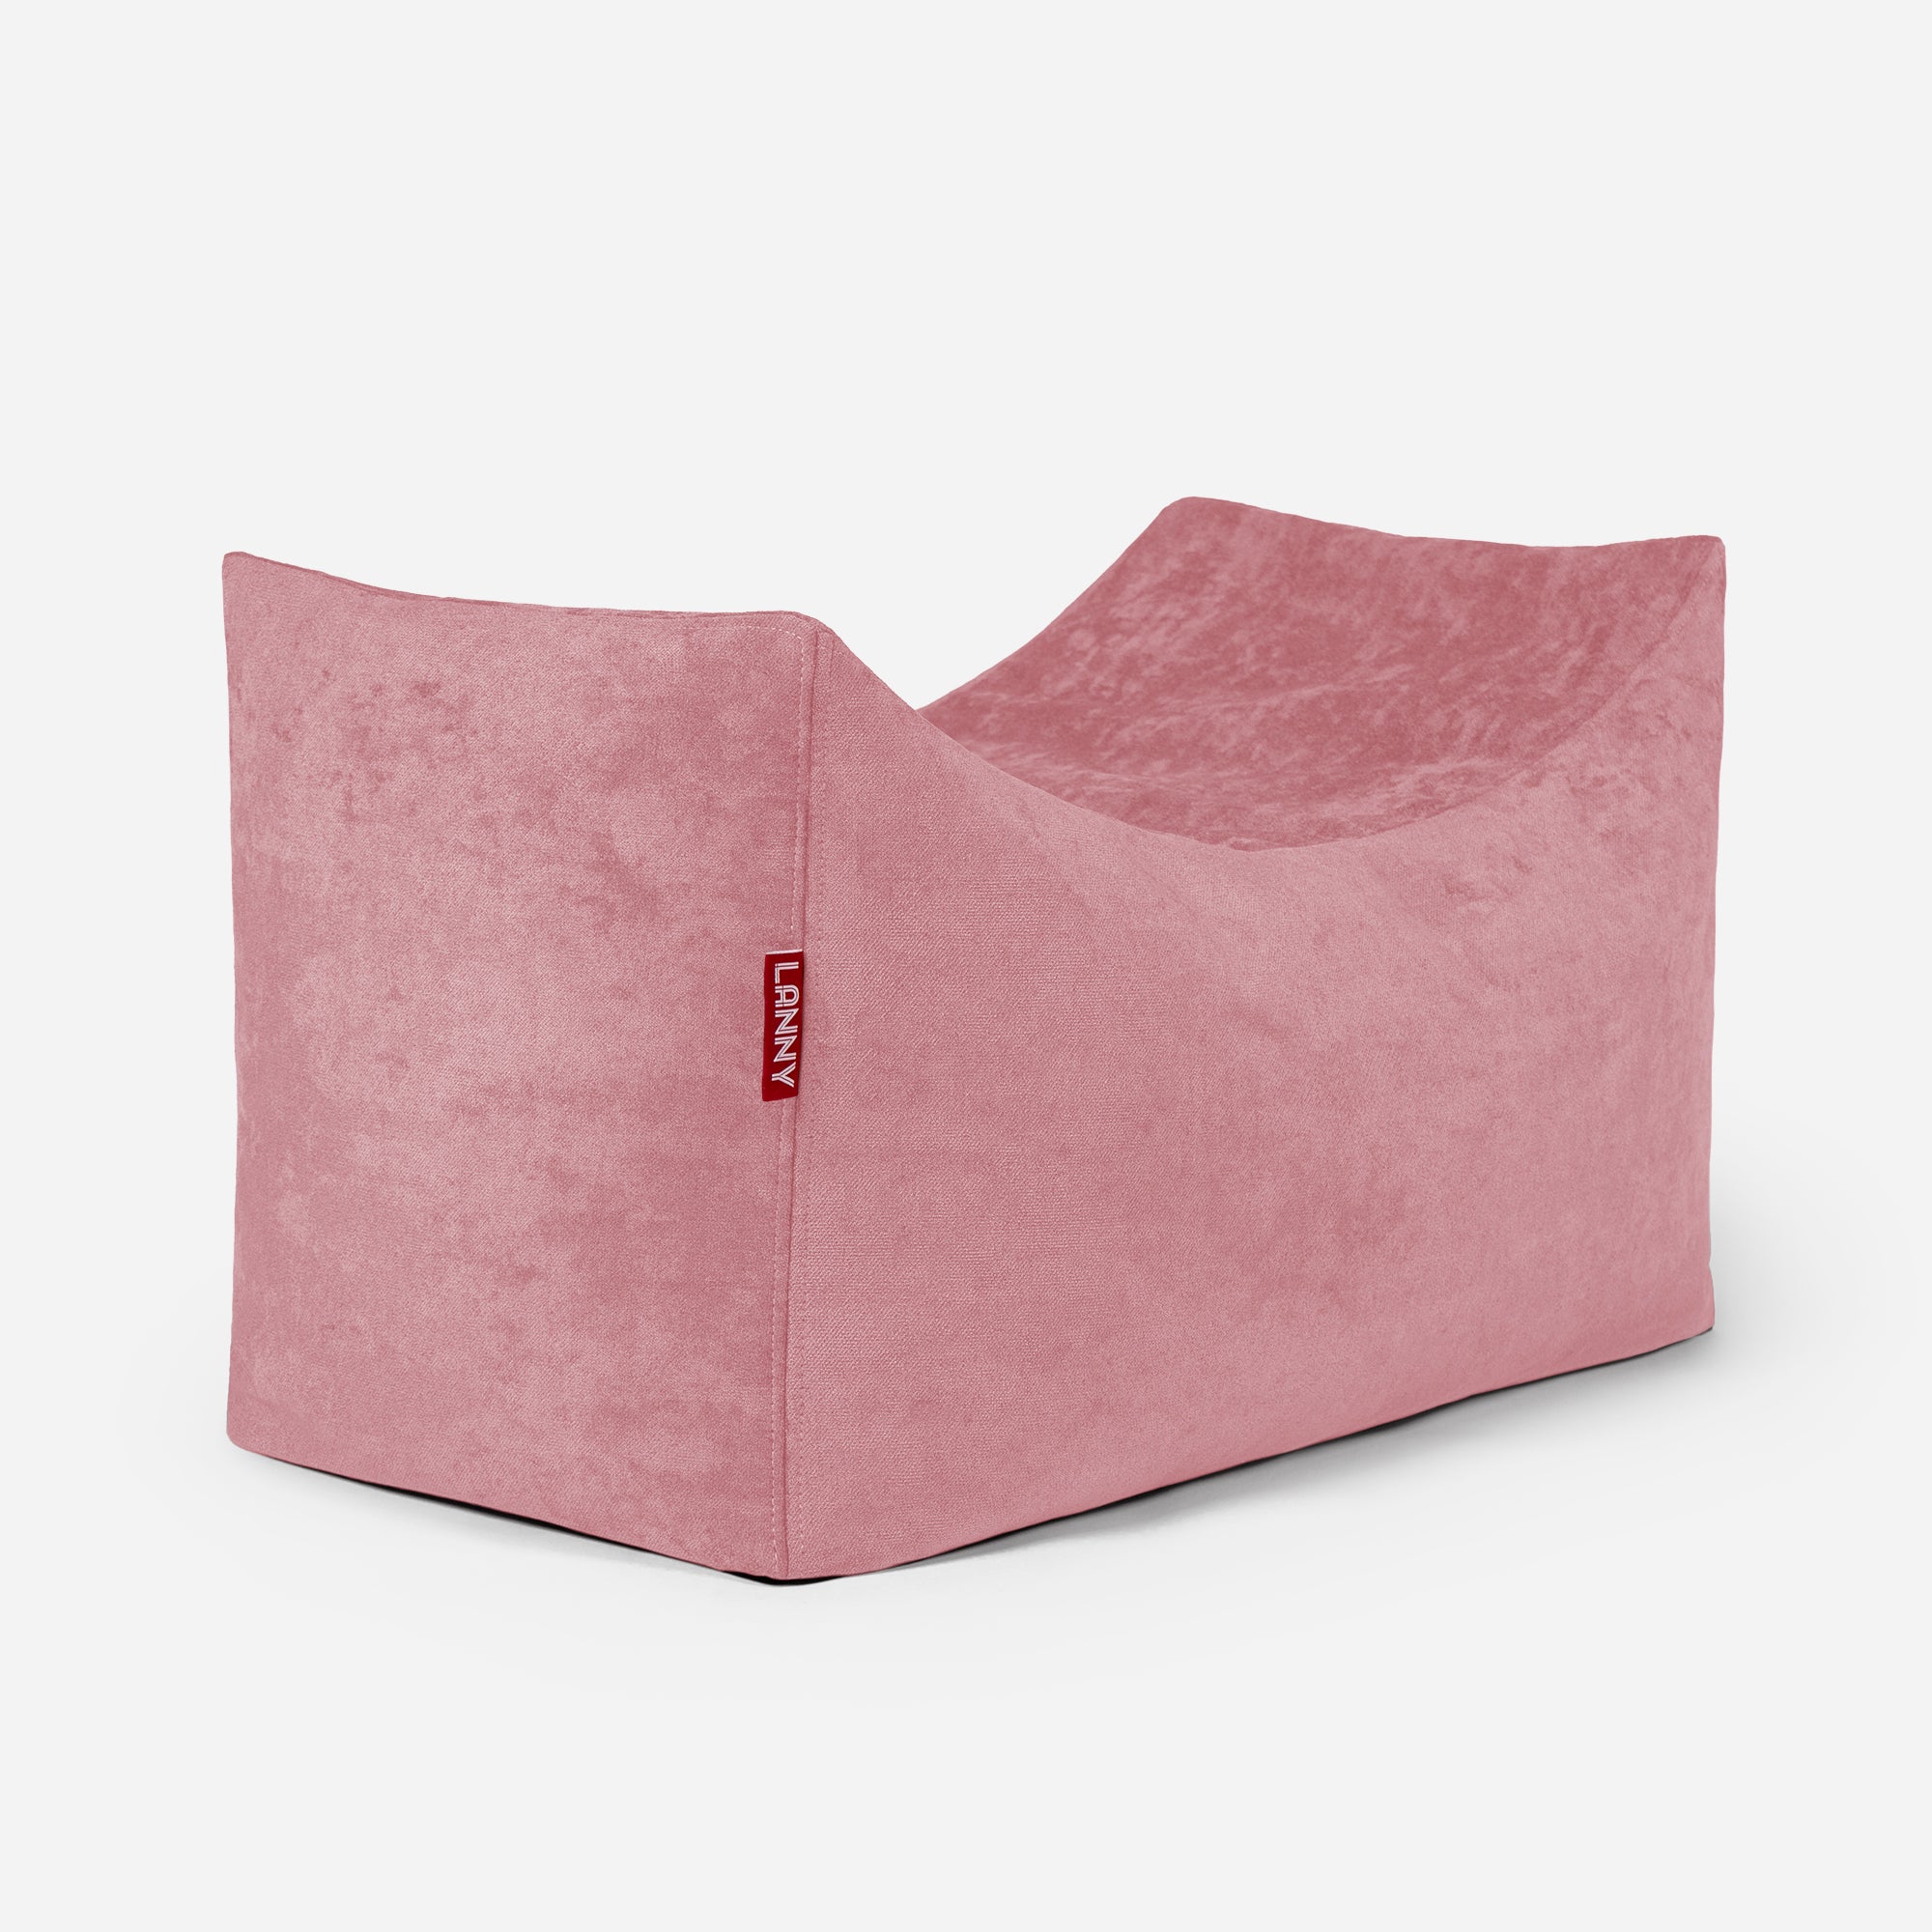 Quadro Aldo Pink Bean bag Chair